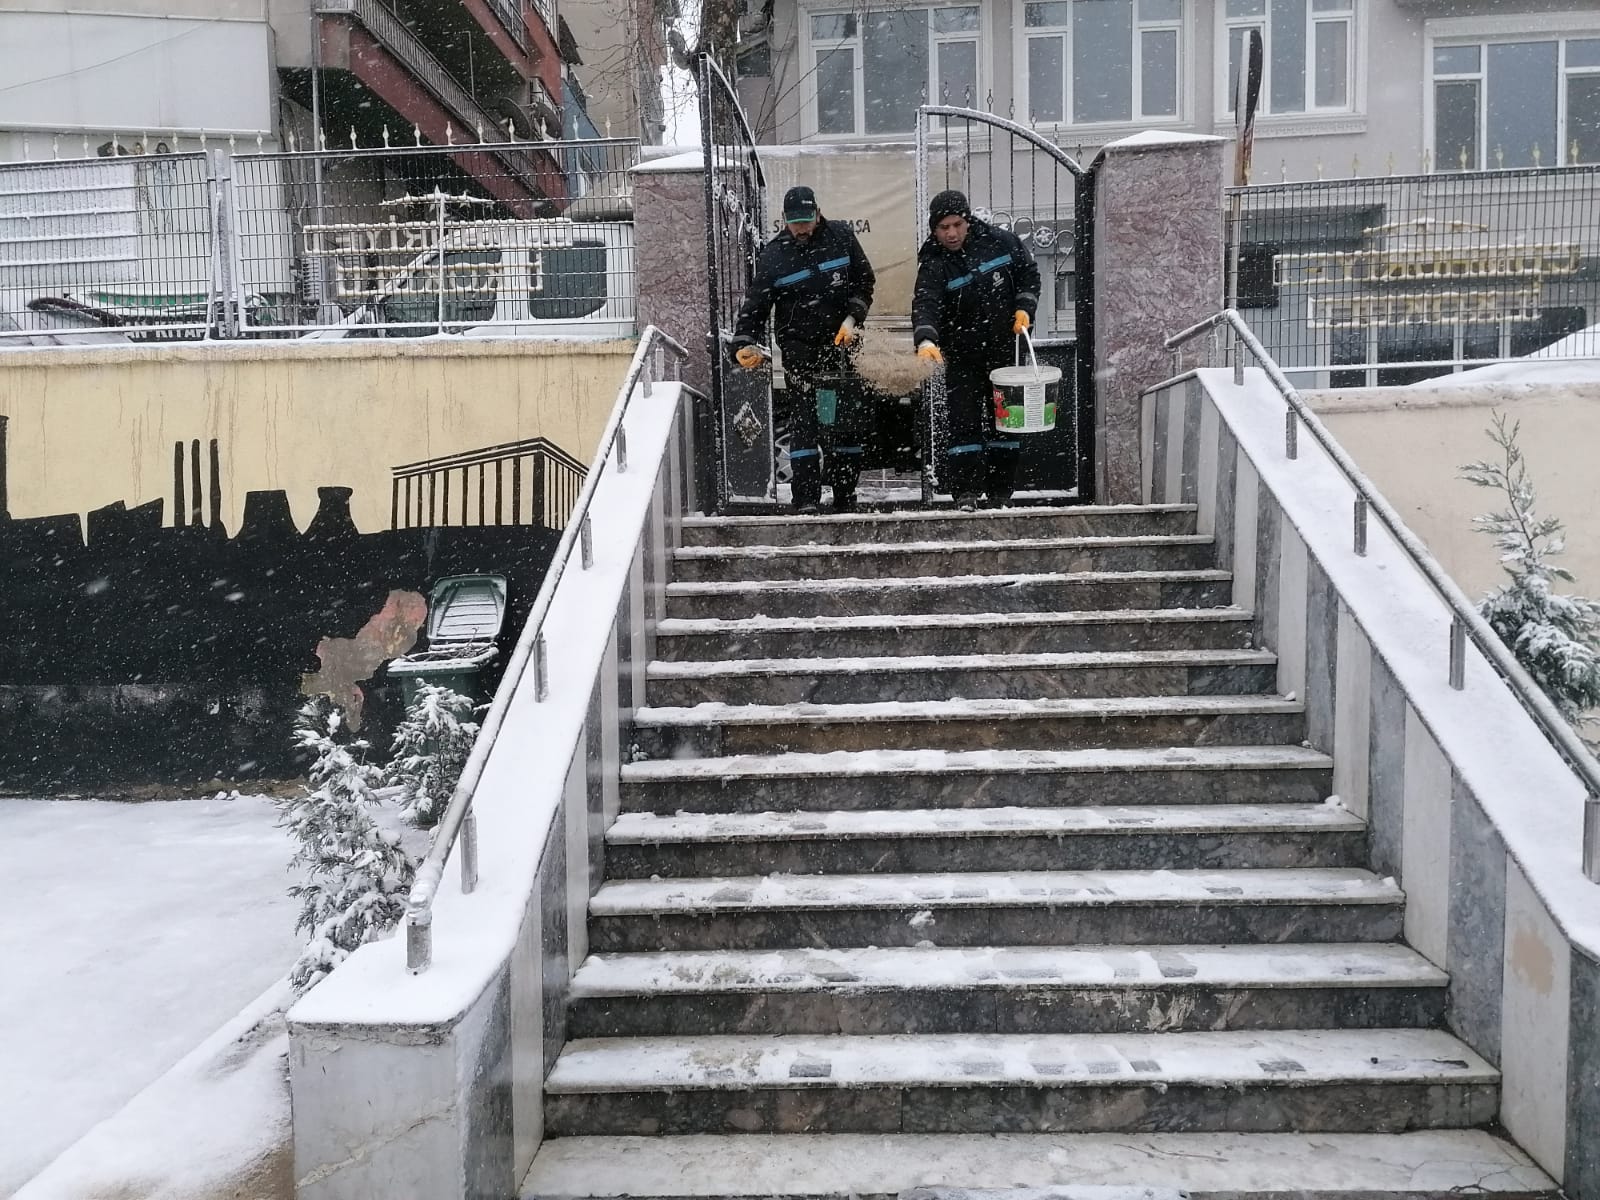 Süleymanpaşa Belediyesi kar yağışının çileye dönüşmesini önledi